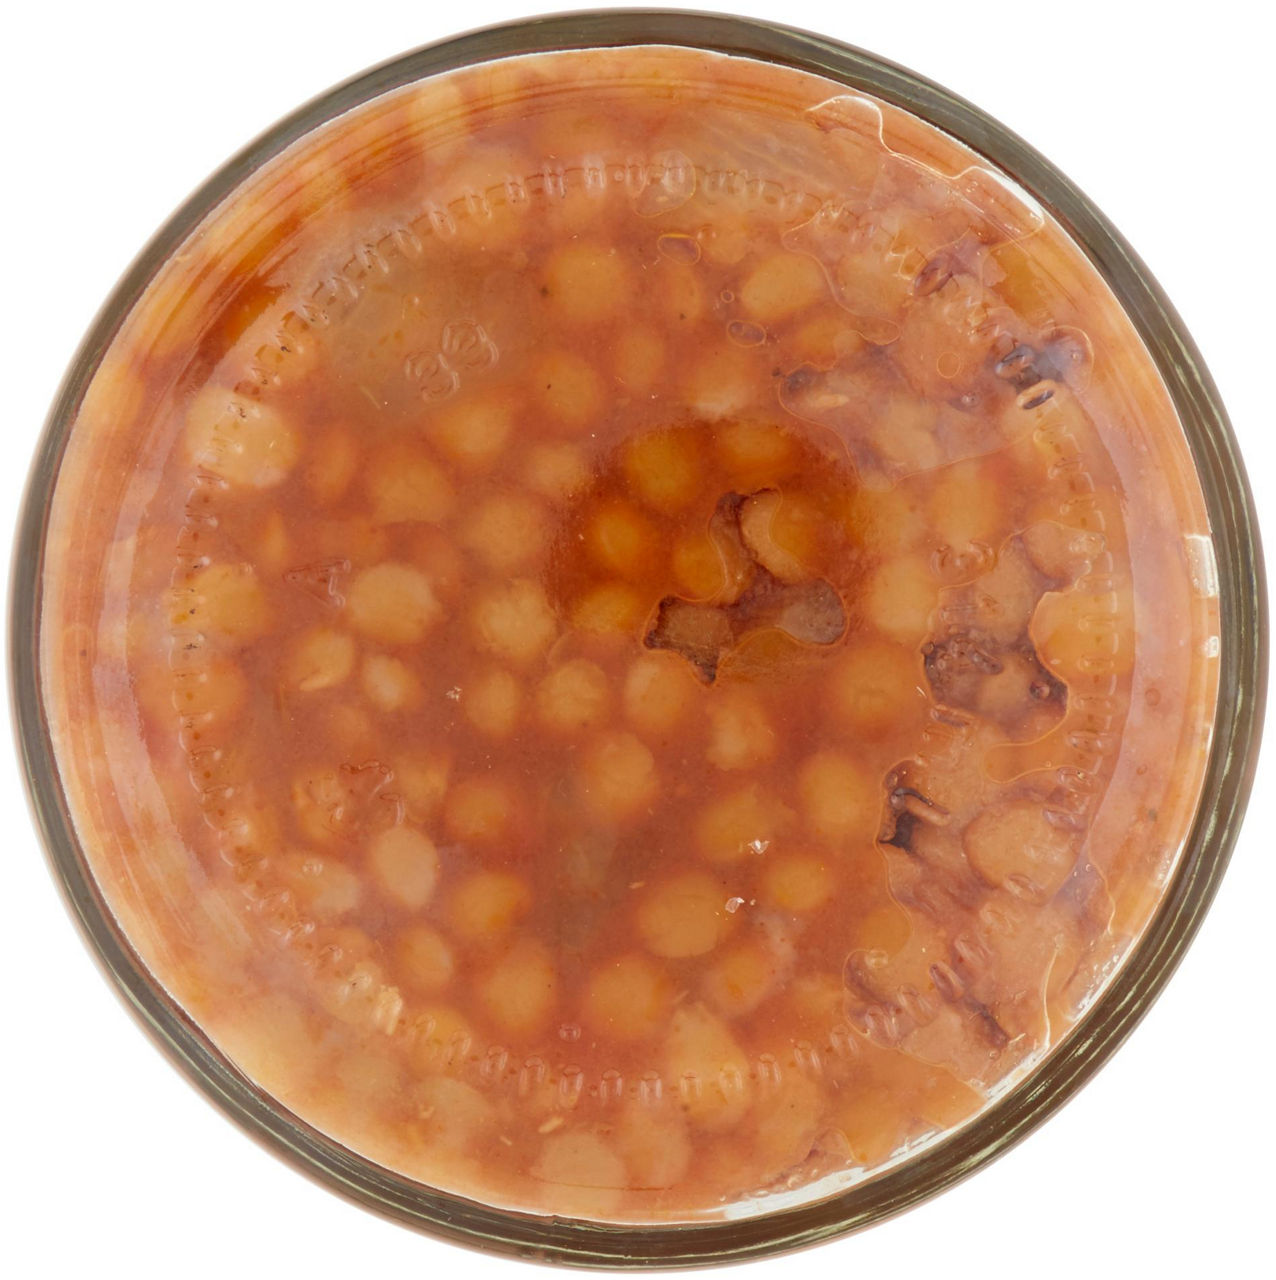 Zuppa di lenticchie biologica con olio extra vergine di oliva gr 285 - 5